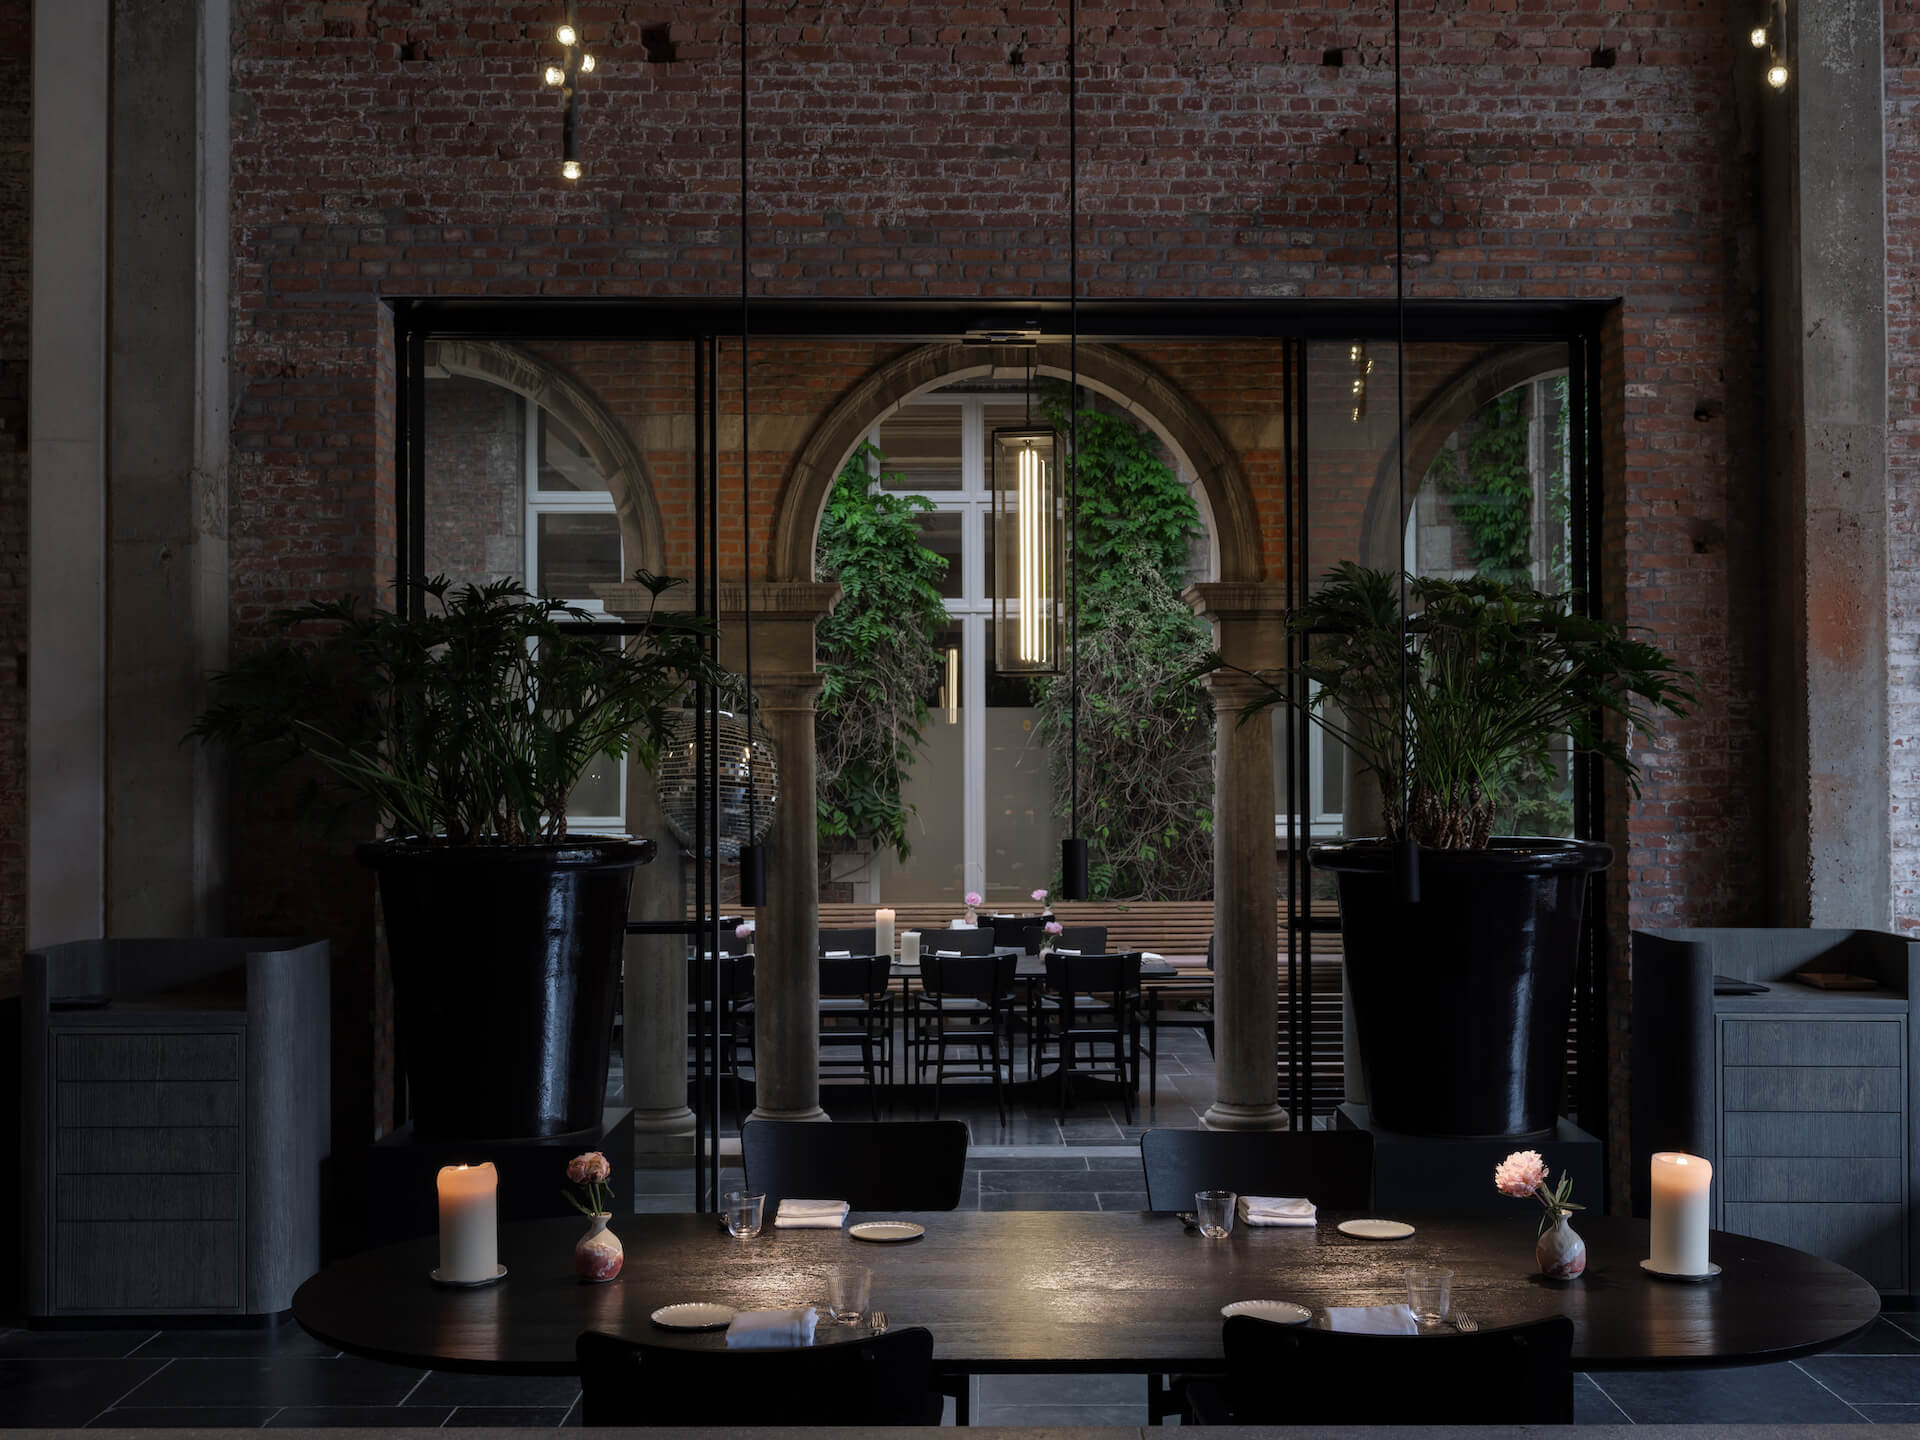 Space Copenhagen - interior restaurant and terrace photo: Peter Paul de Meijer